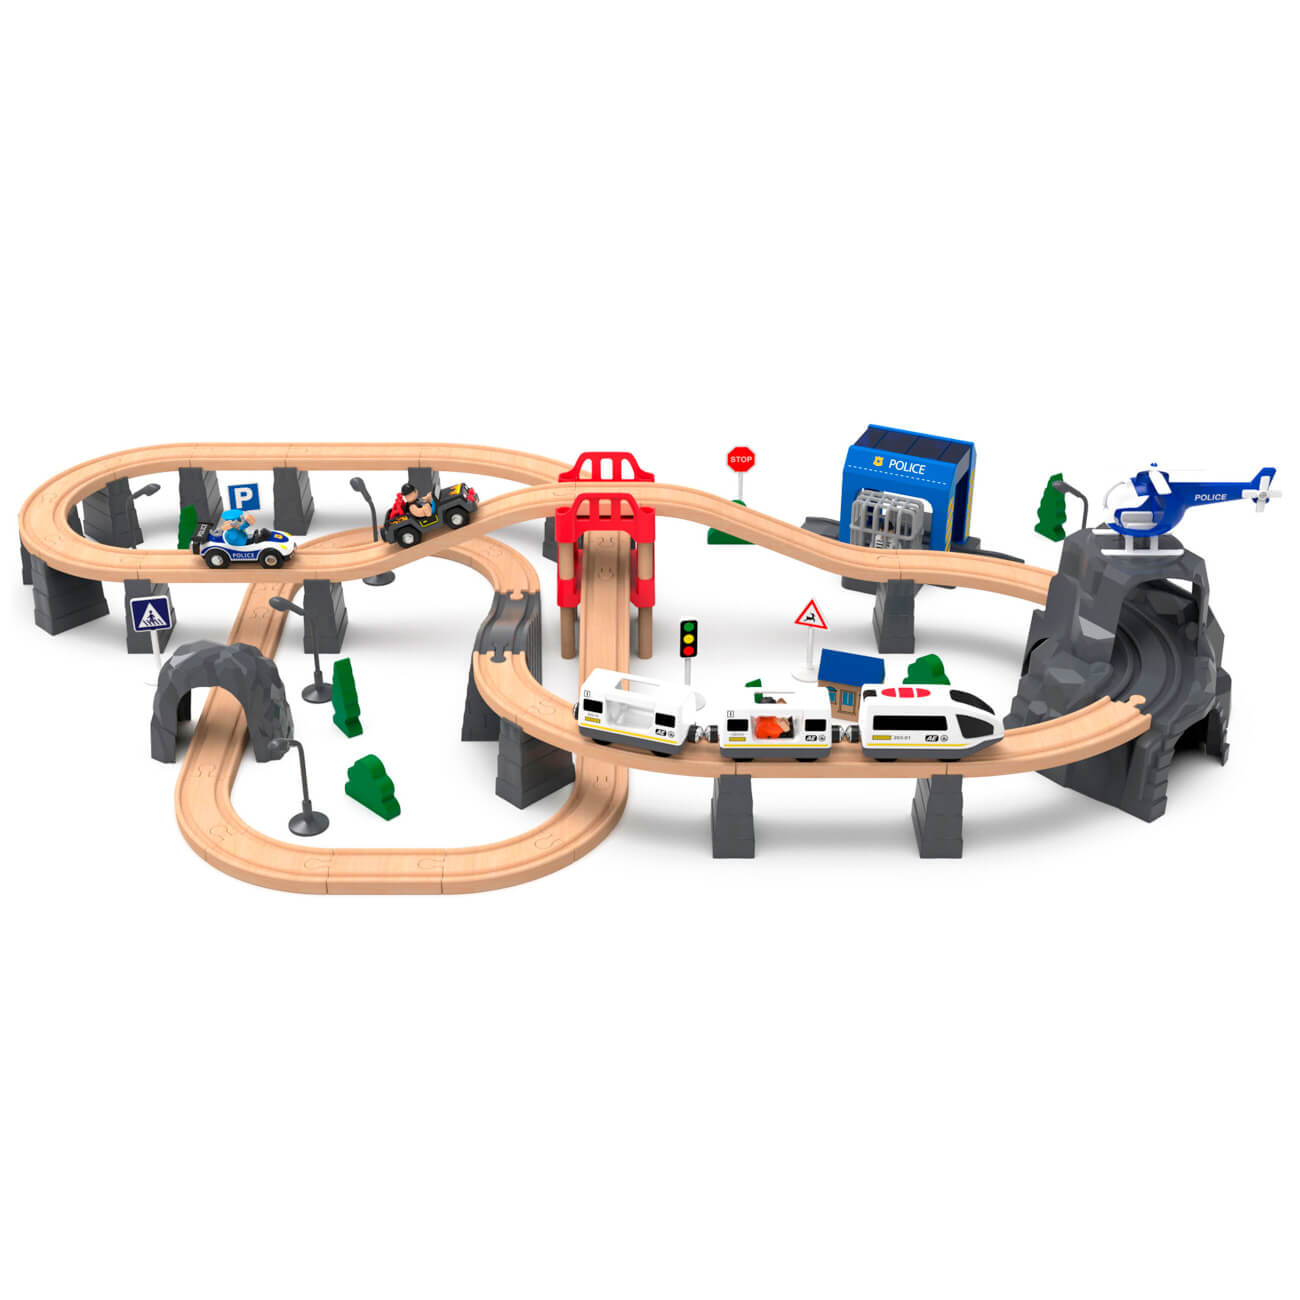 Железная дорога игрушечная, 98 см, дерево/пластик, Электропоезд, Game rail железная дорога зверопоезд